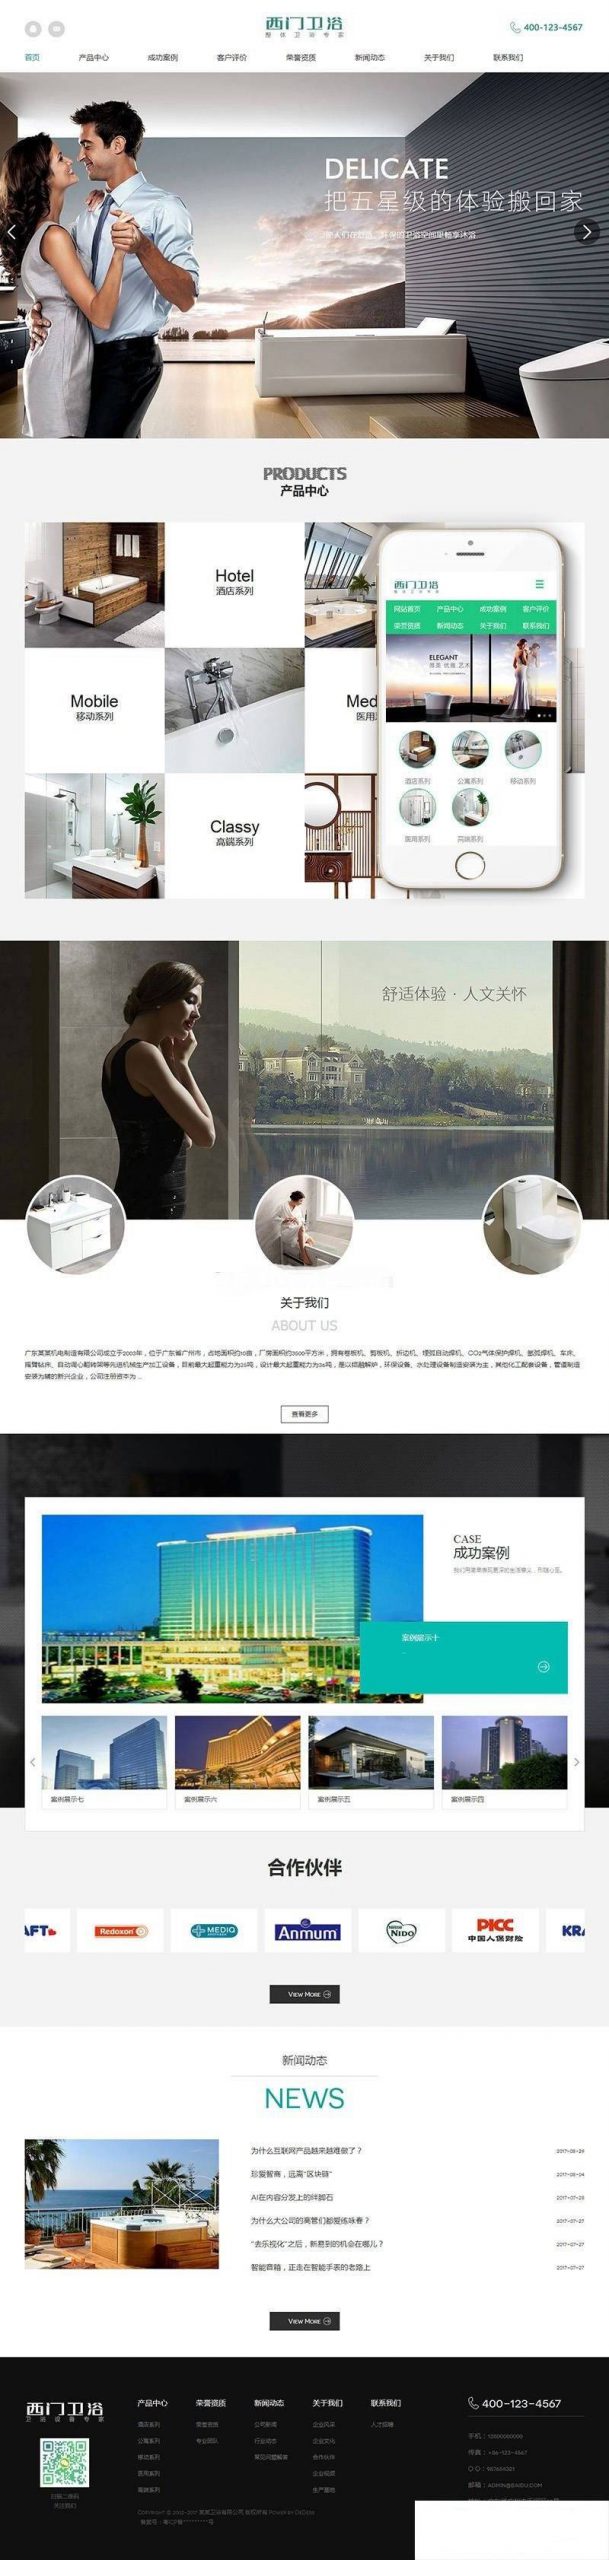 织梦dedecms模板家居卫浴设计公司网站模板(带移动端)-乐熊日记